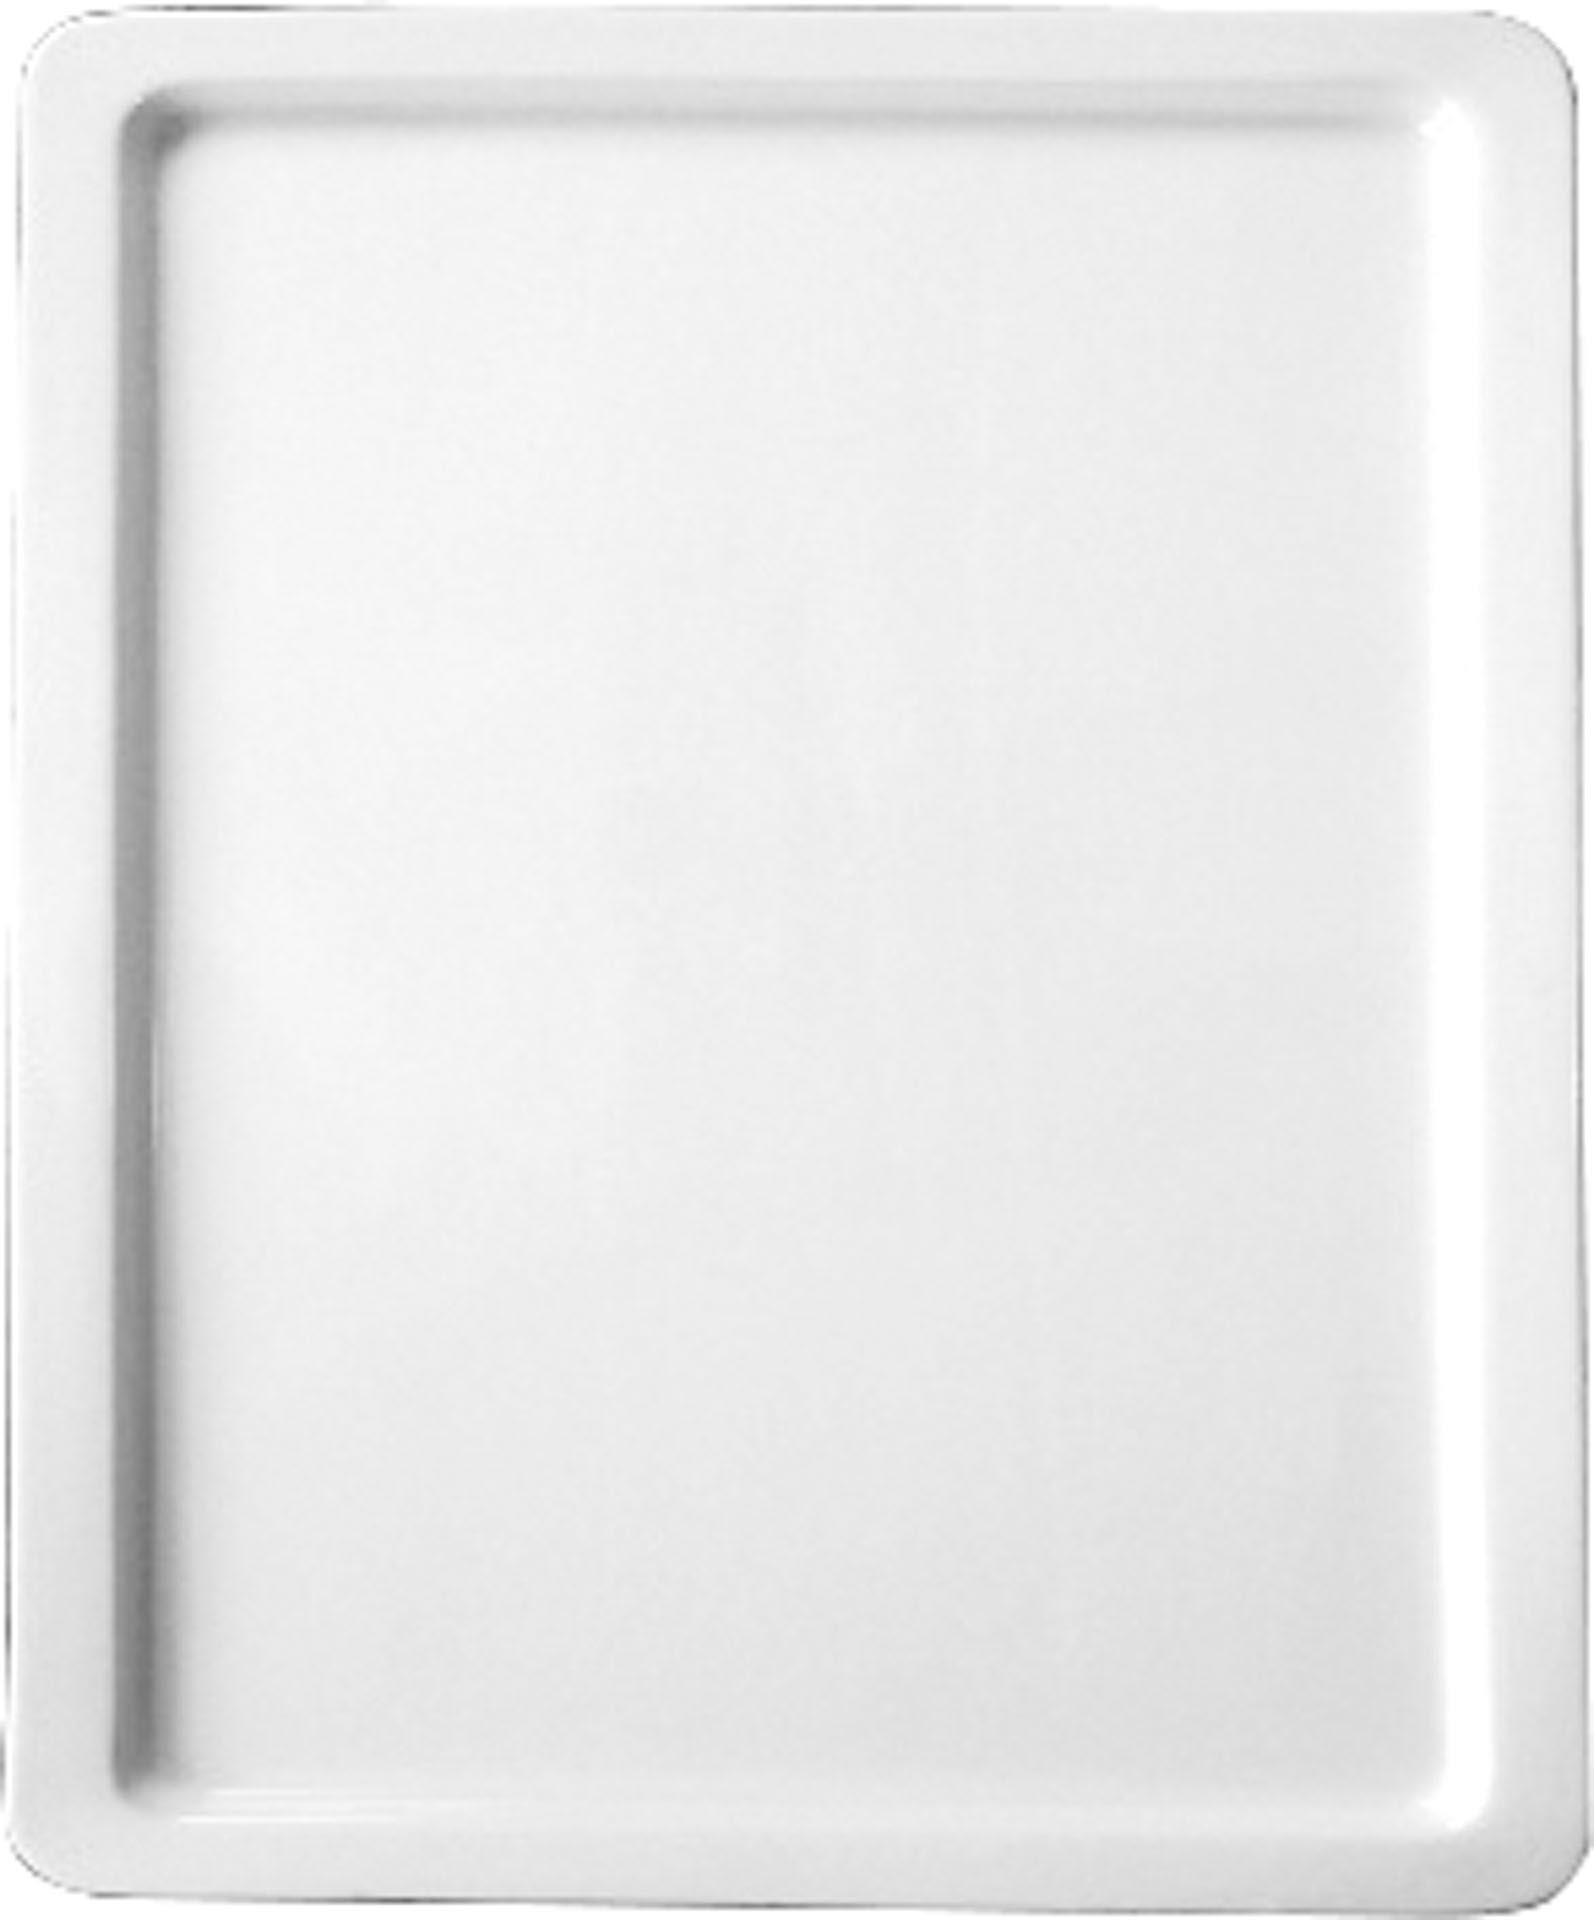 GN-Platte 1/4 - 20 mm, weiß, Porzellan